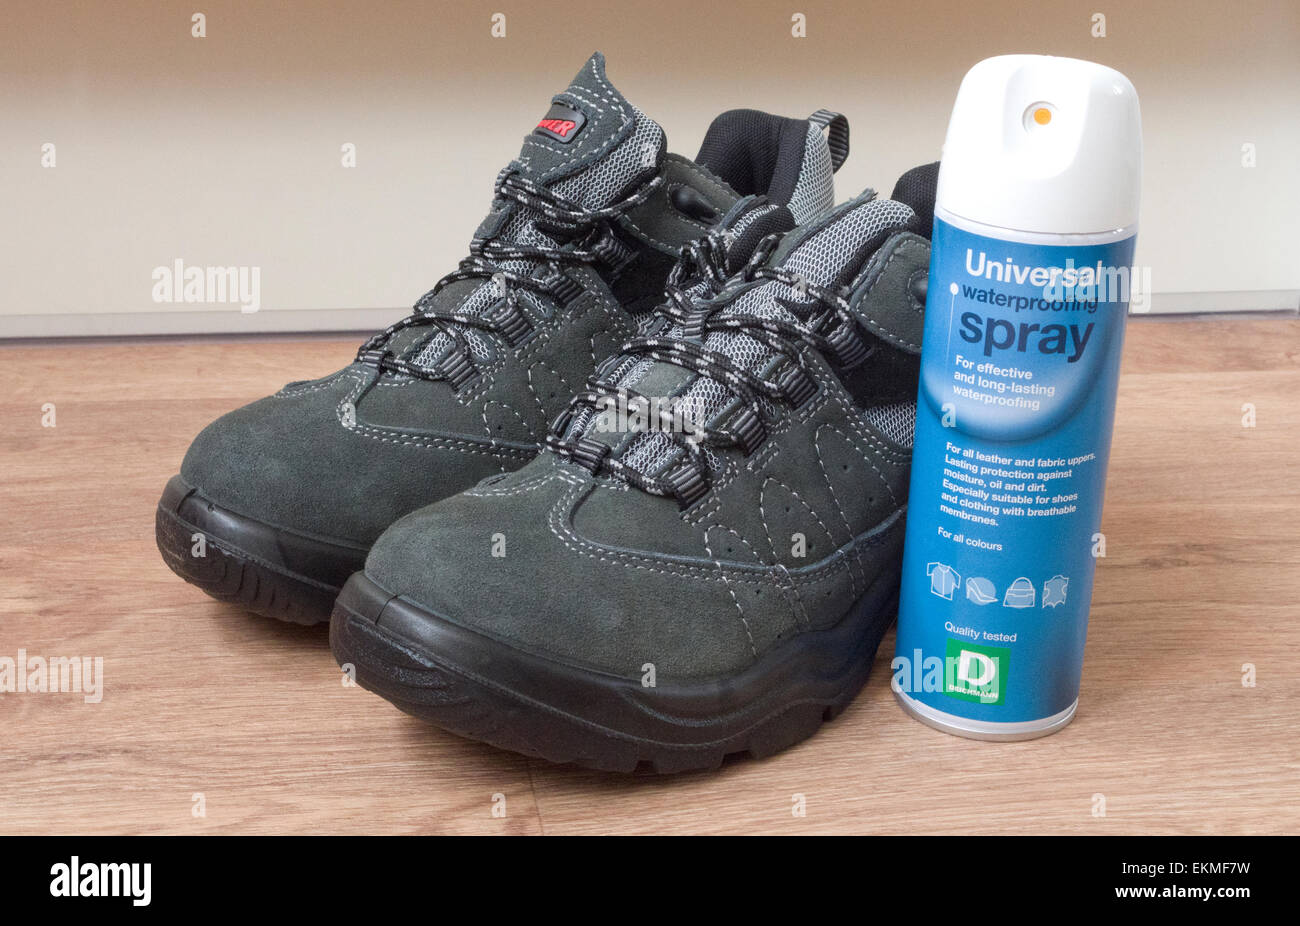 Botas de senderismo con una lata de Spray impermeabilizante, REINO UNIDO  Fotografía de stock - Alamy